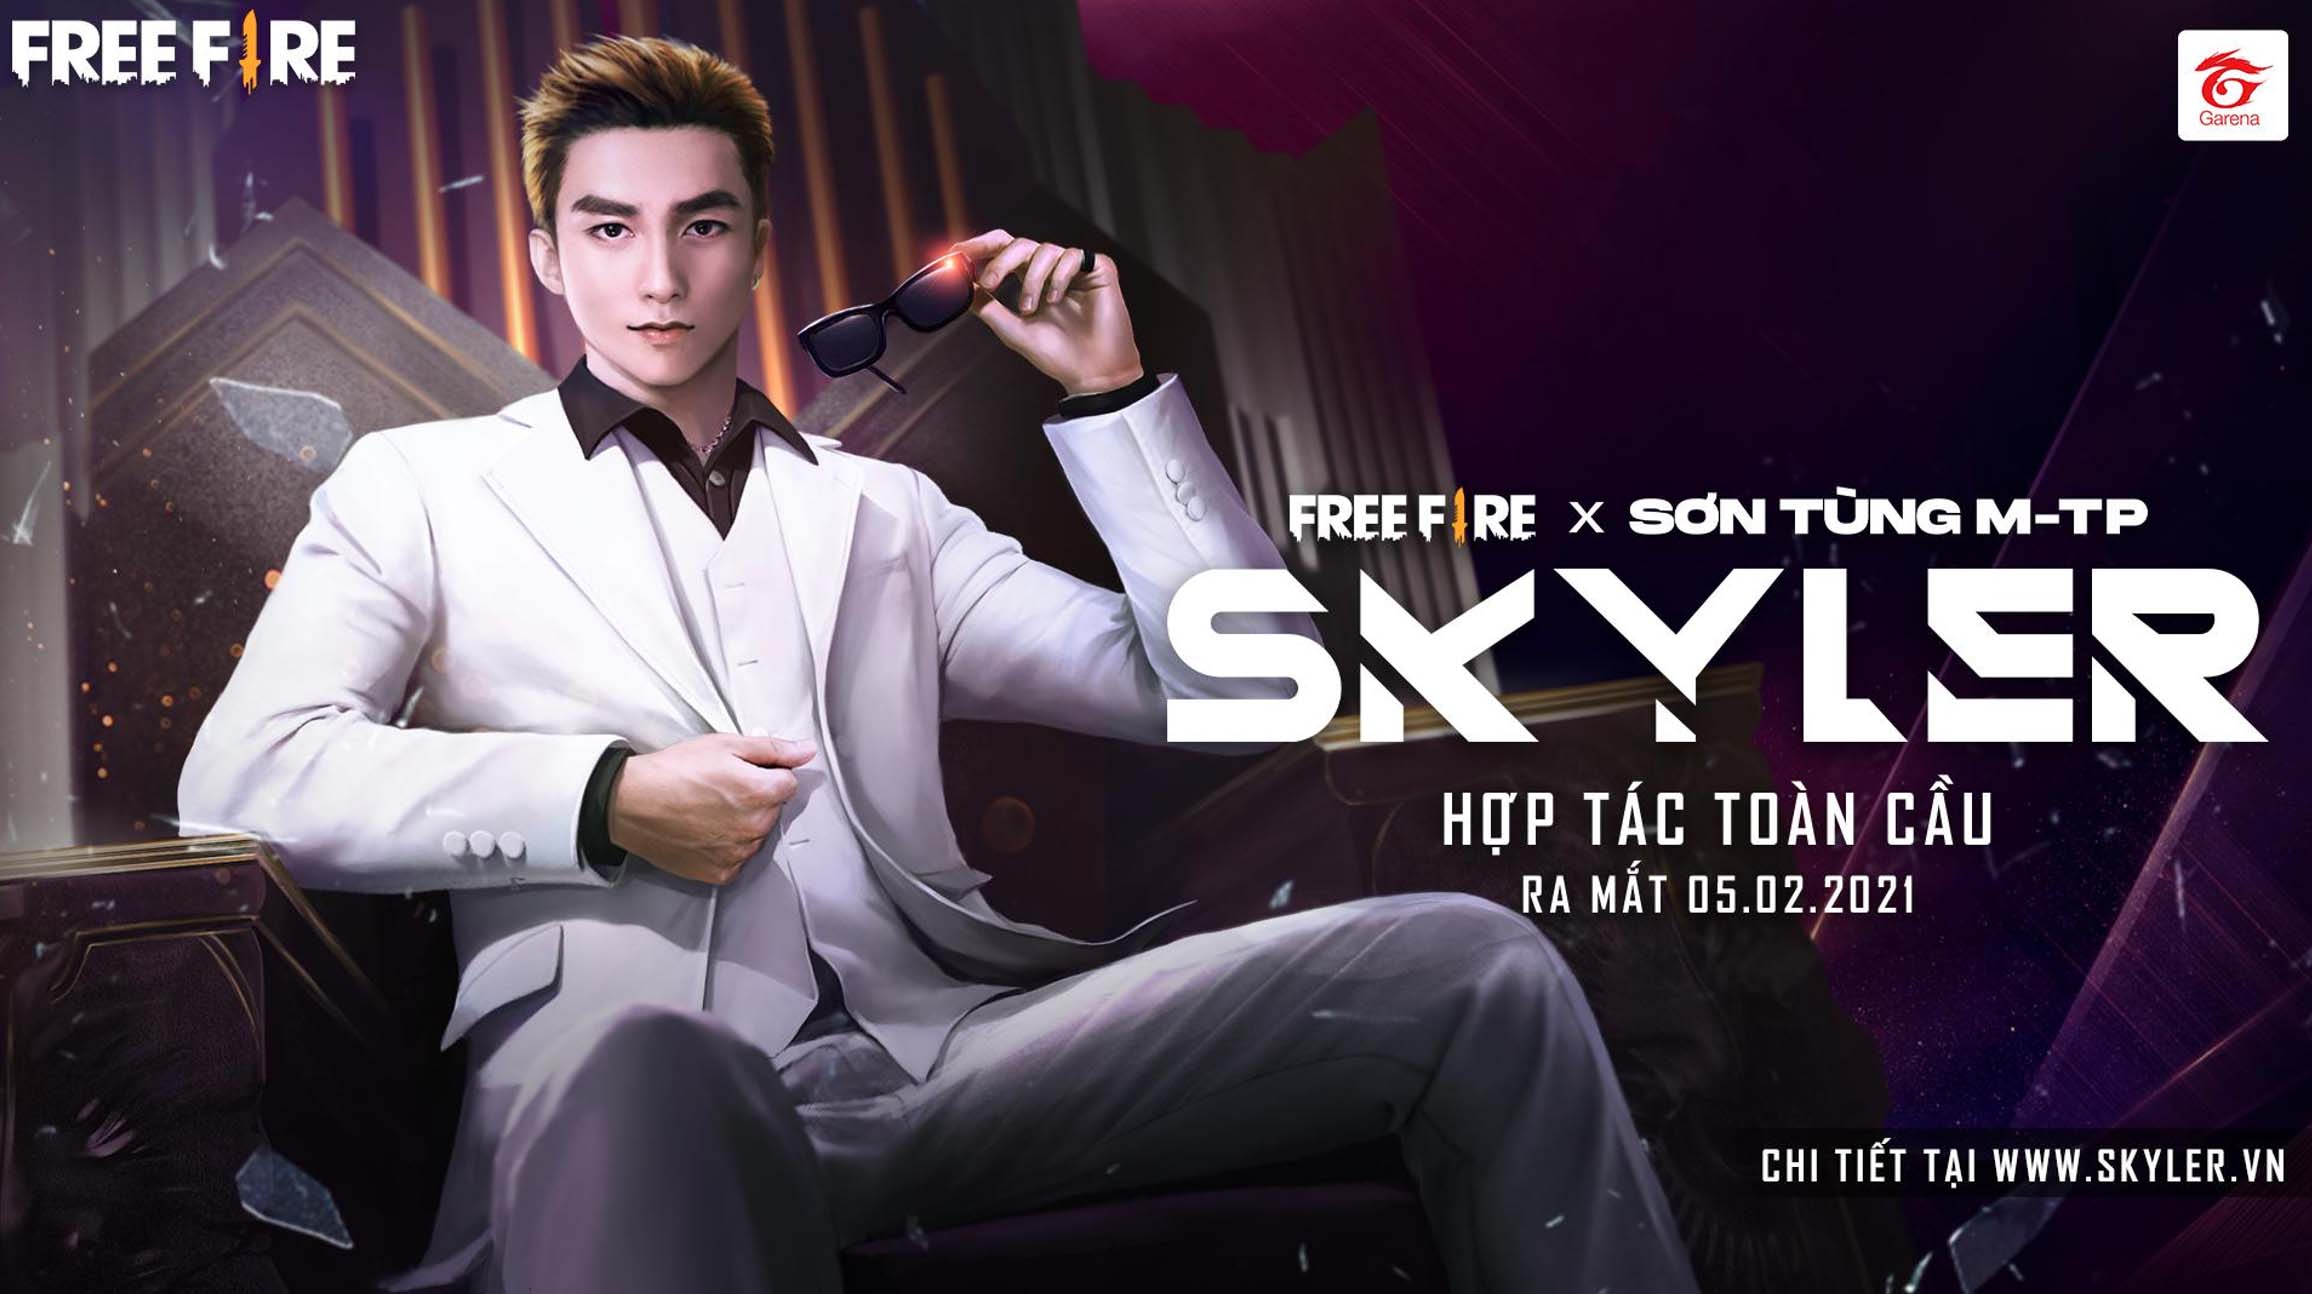 Tìm hiểu về Skyler – Nhân vật Việt Nam đầu tiên lấy cảm hứng từ Sơn Tùng M-TP, xuất hiện trong Free Fire từ ngày 05/02/2021